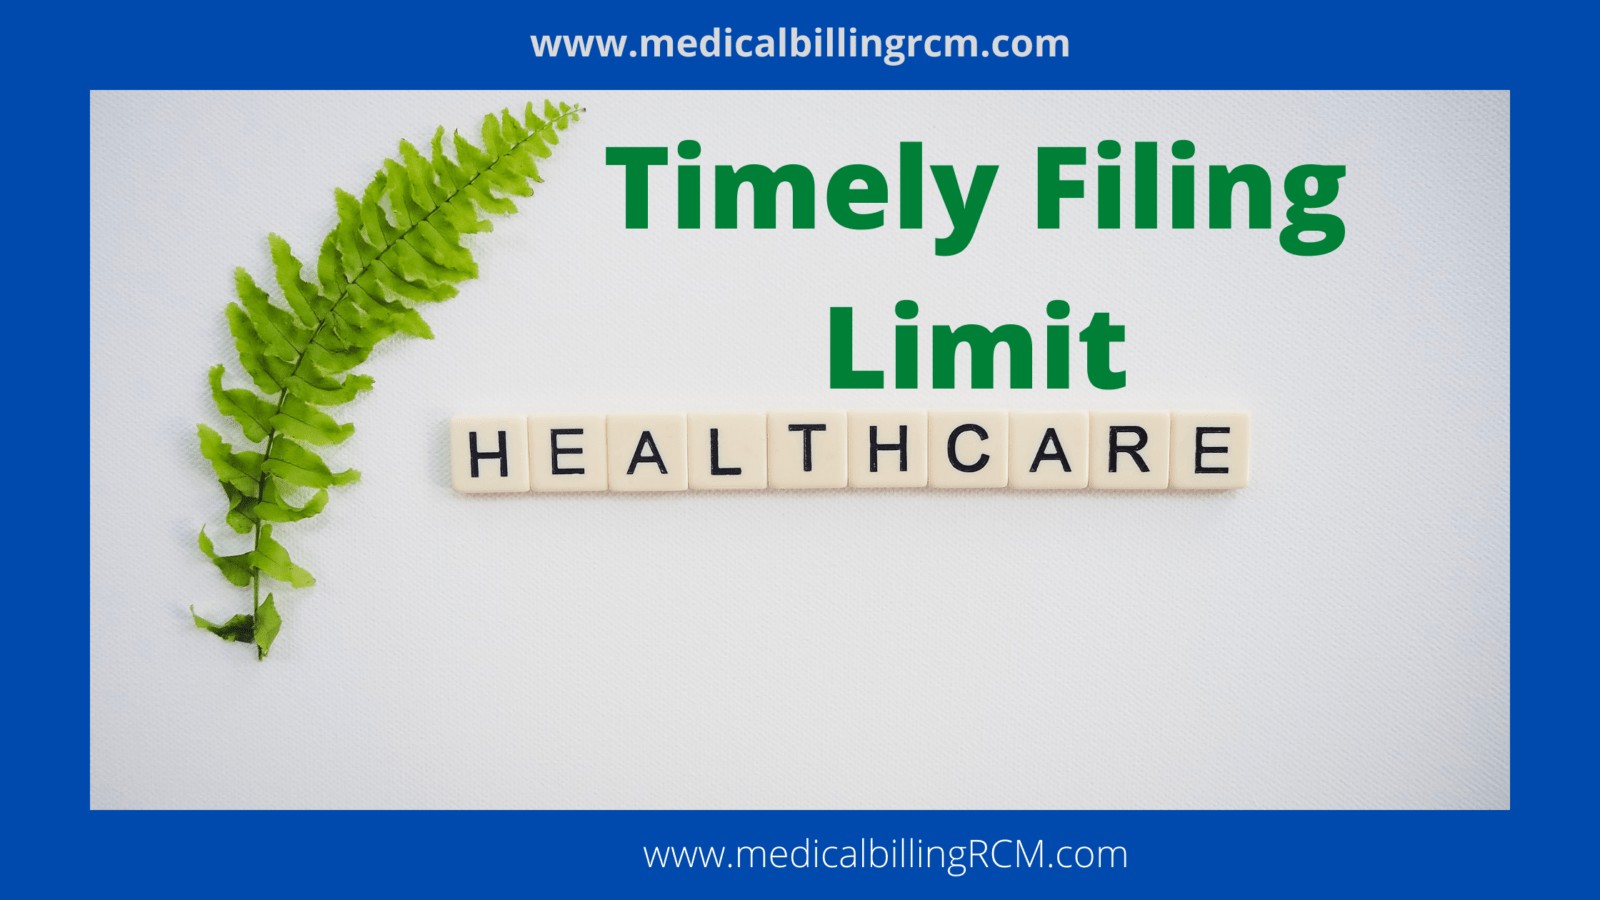 timely filing limit in medical billing